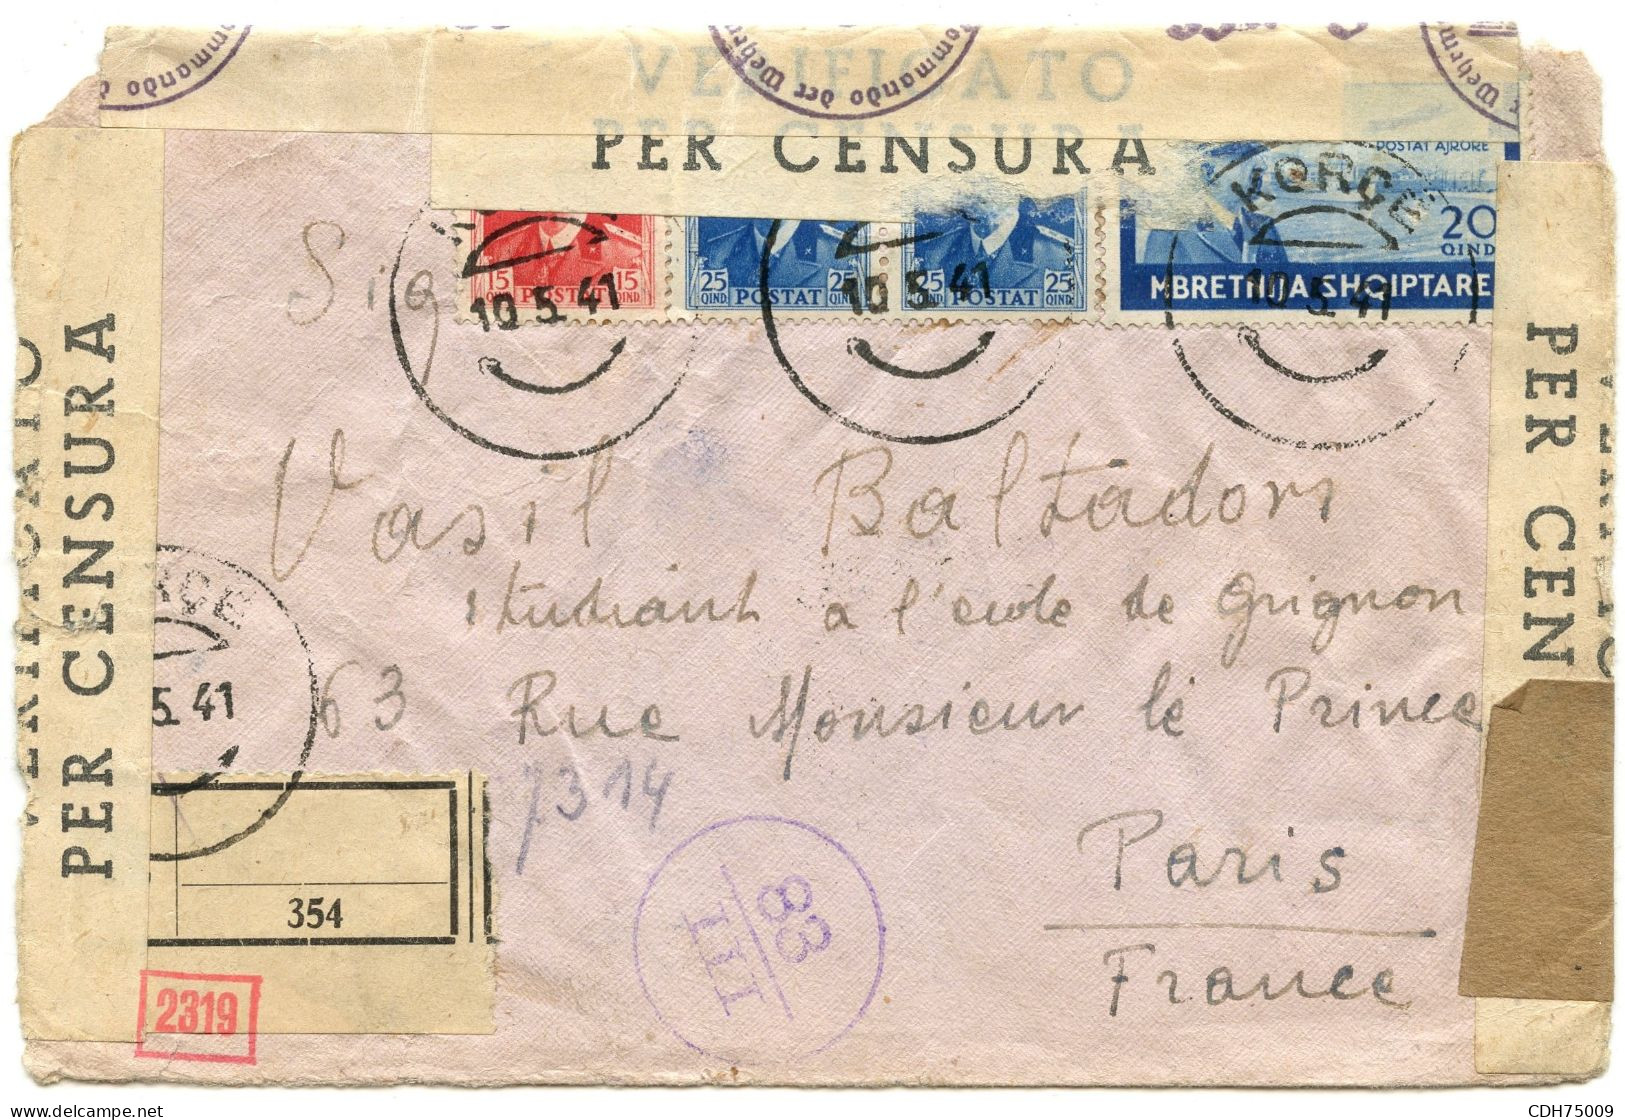 ITALIE - LETTRE RECOMMANDEE CENSUREE DE KORCE POUR PARIS, 1941 - Albanië